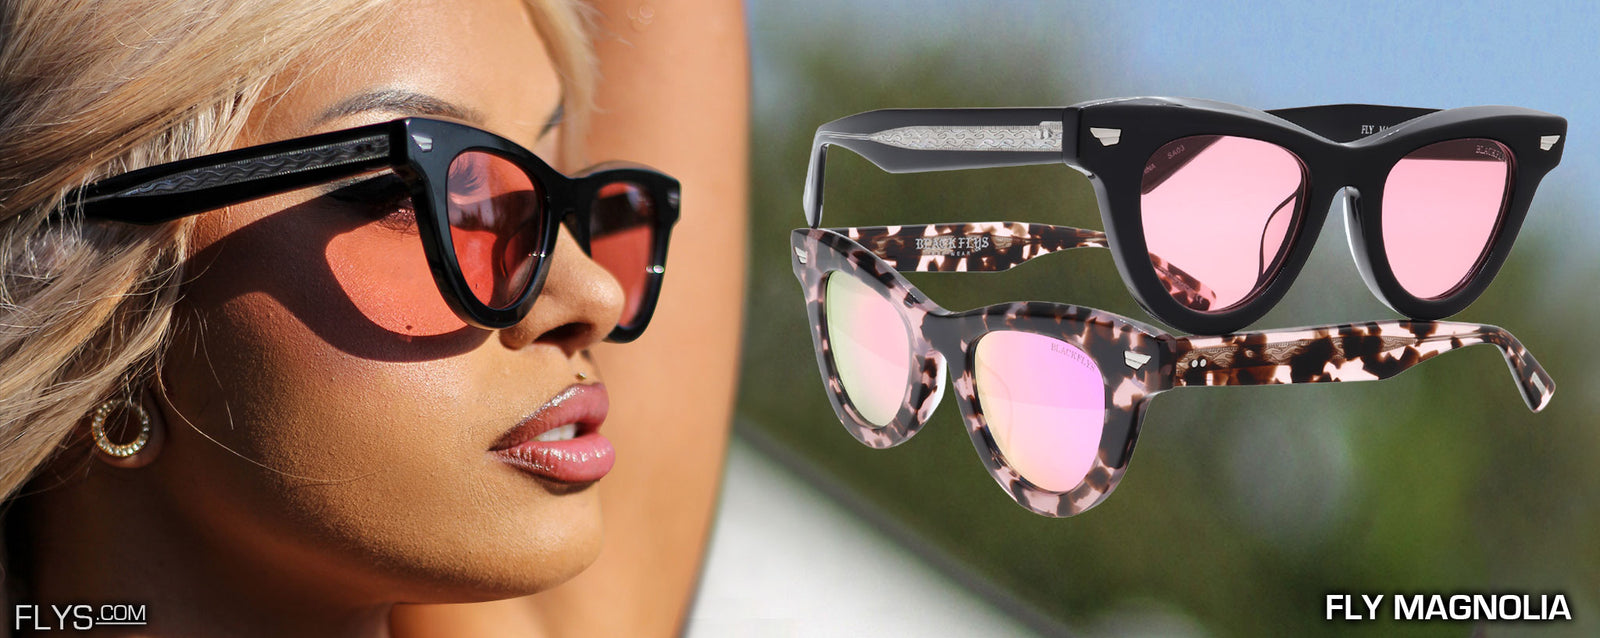 Buy MOED Full Rim Pilot Plastic Sunglasses/Goggles With Black